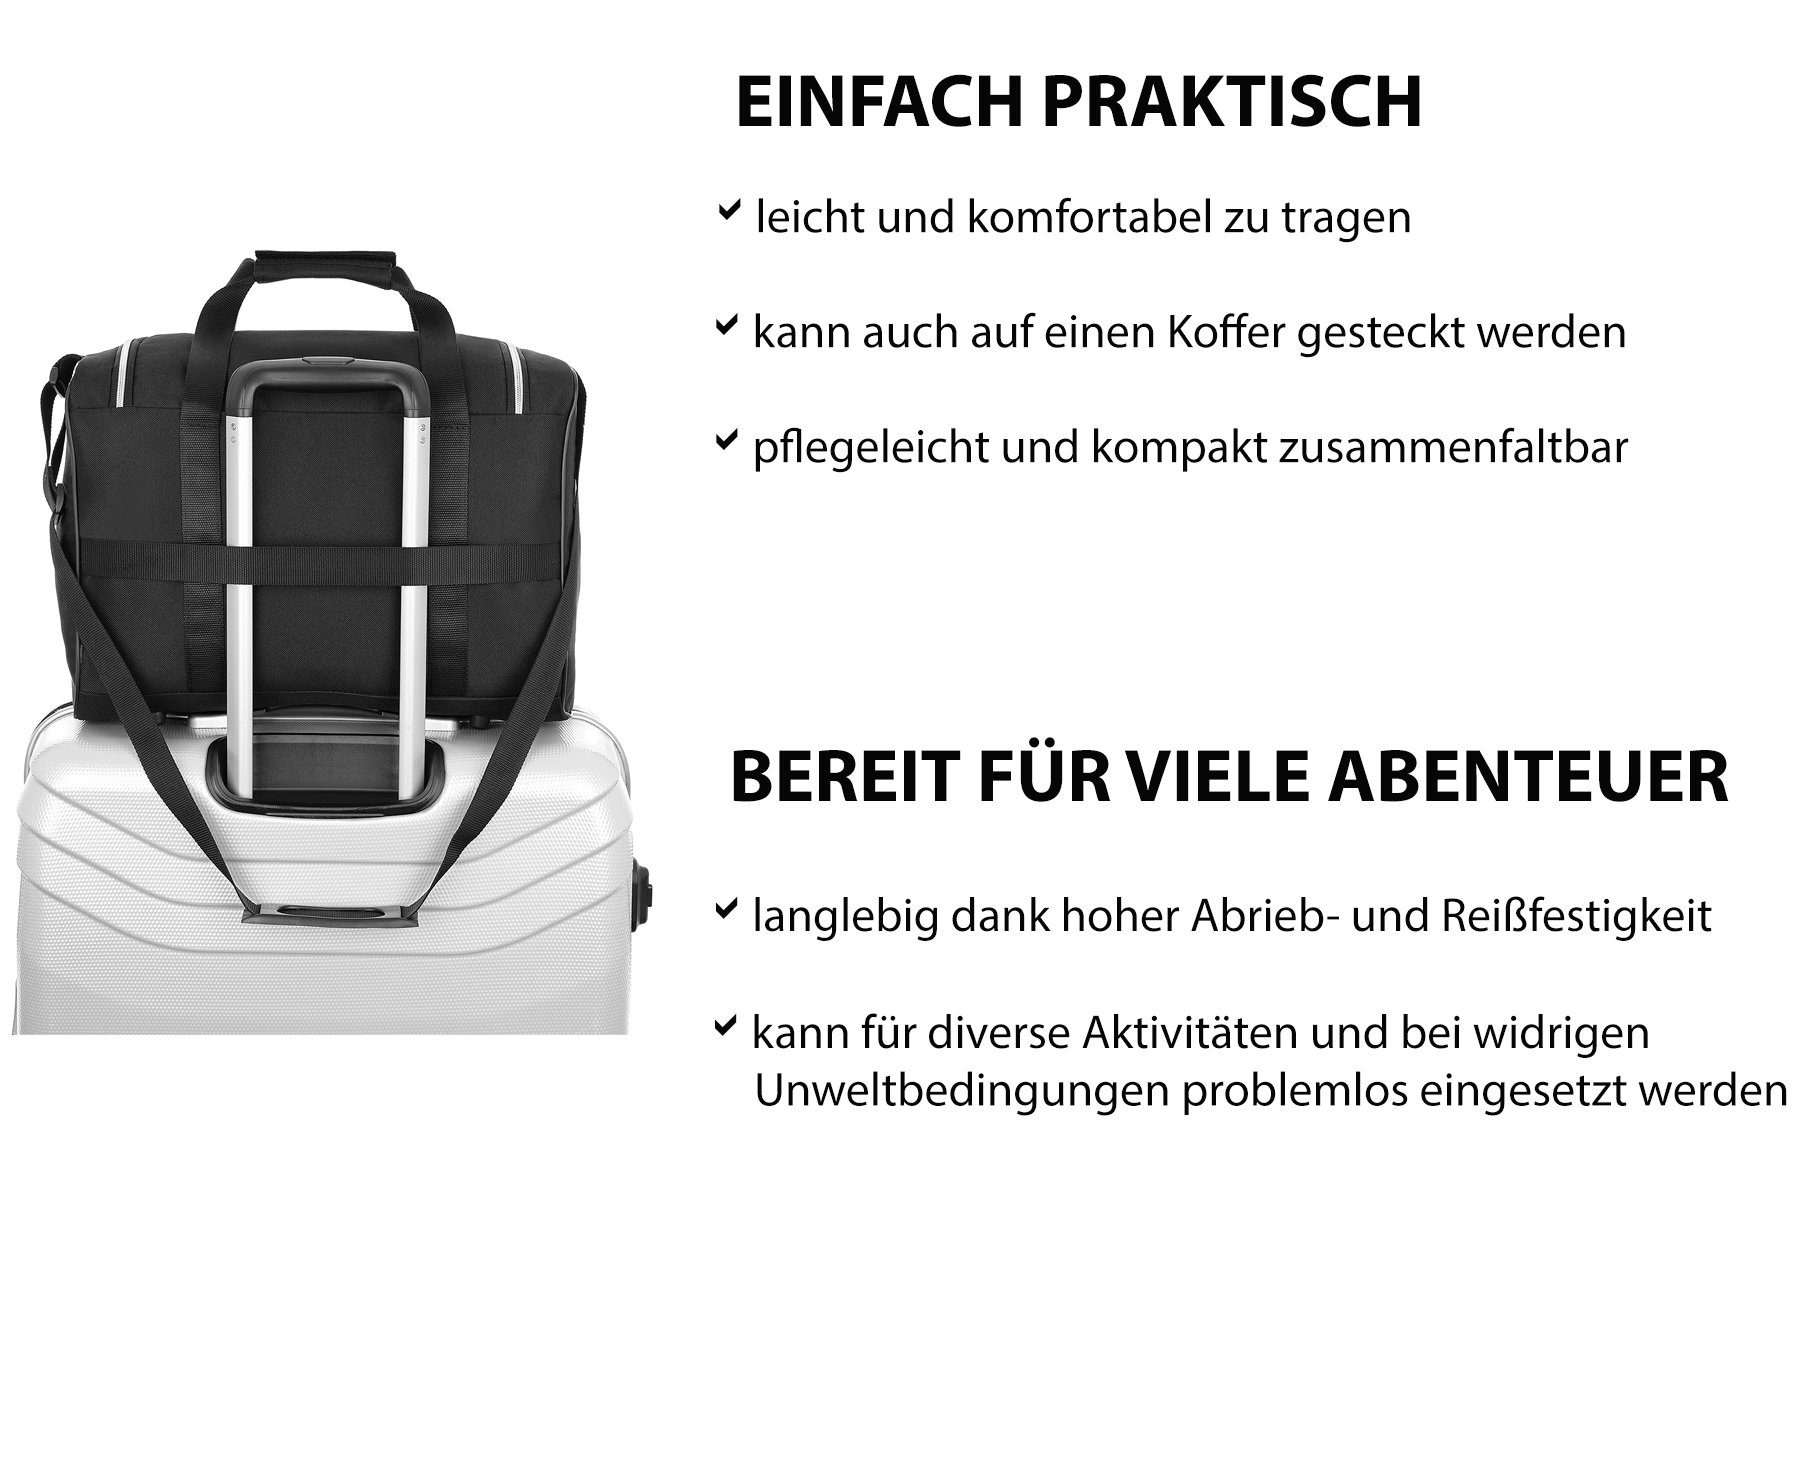 verstellbarem Schultergurt und z. mit extra B. Air Schwarz mit Flüge cm Fach Handgepäck Reisetasche (Modell Granori für leicht, Wizz 40x30x20 abschließbarem WT2),